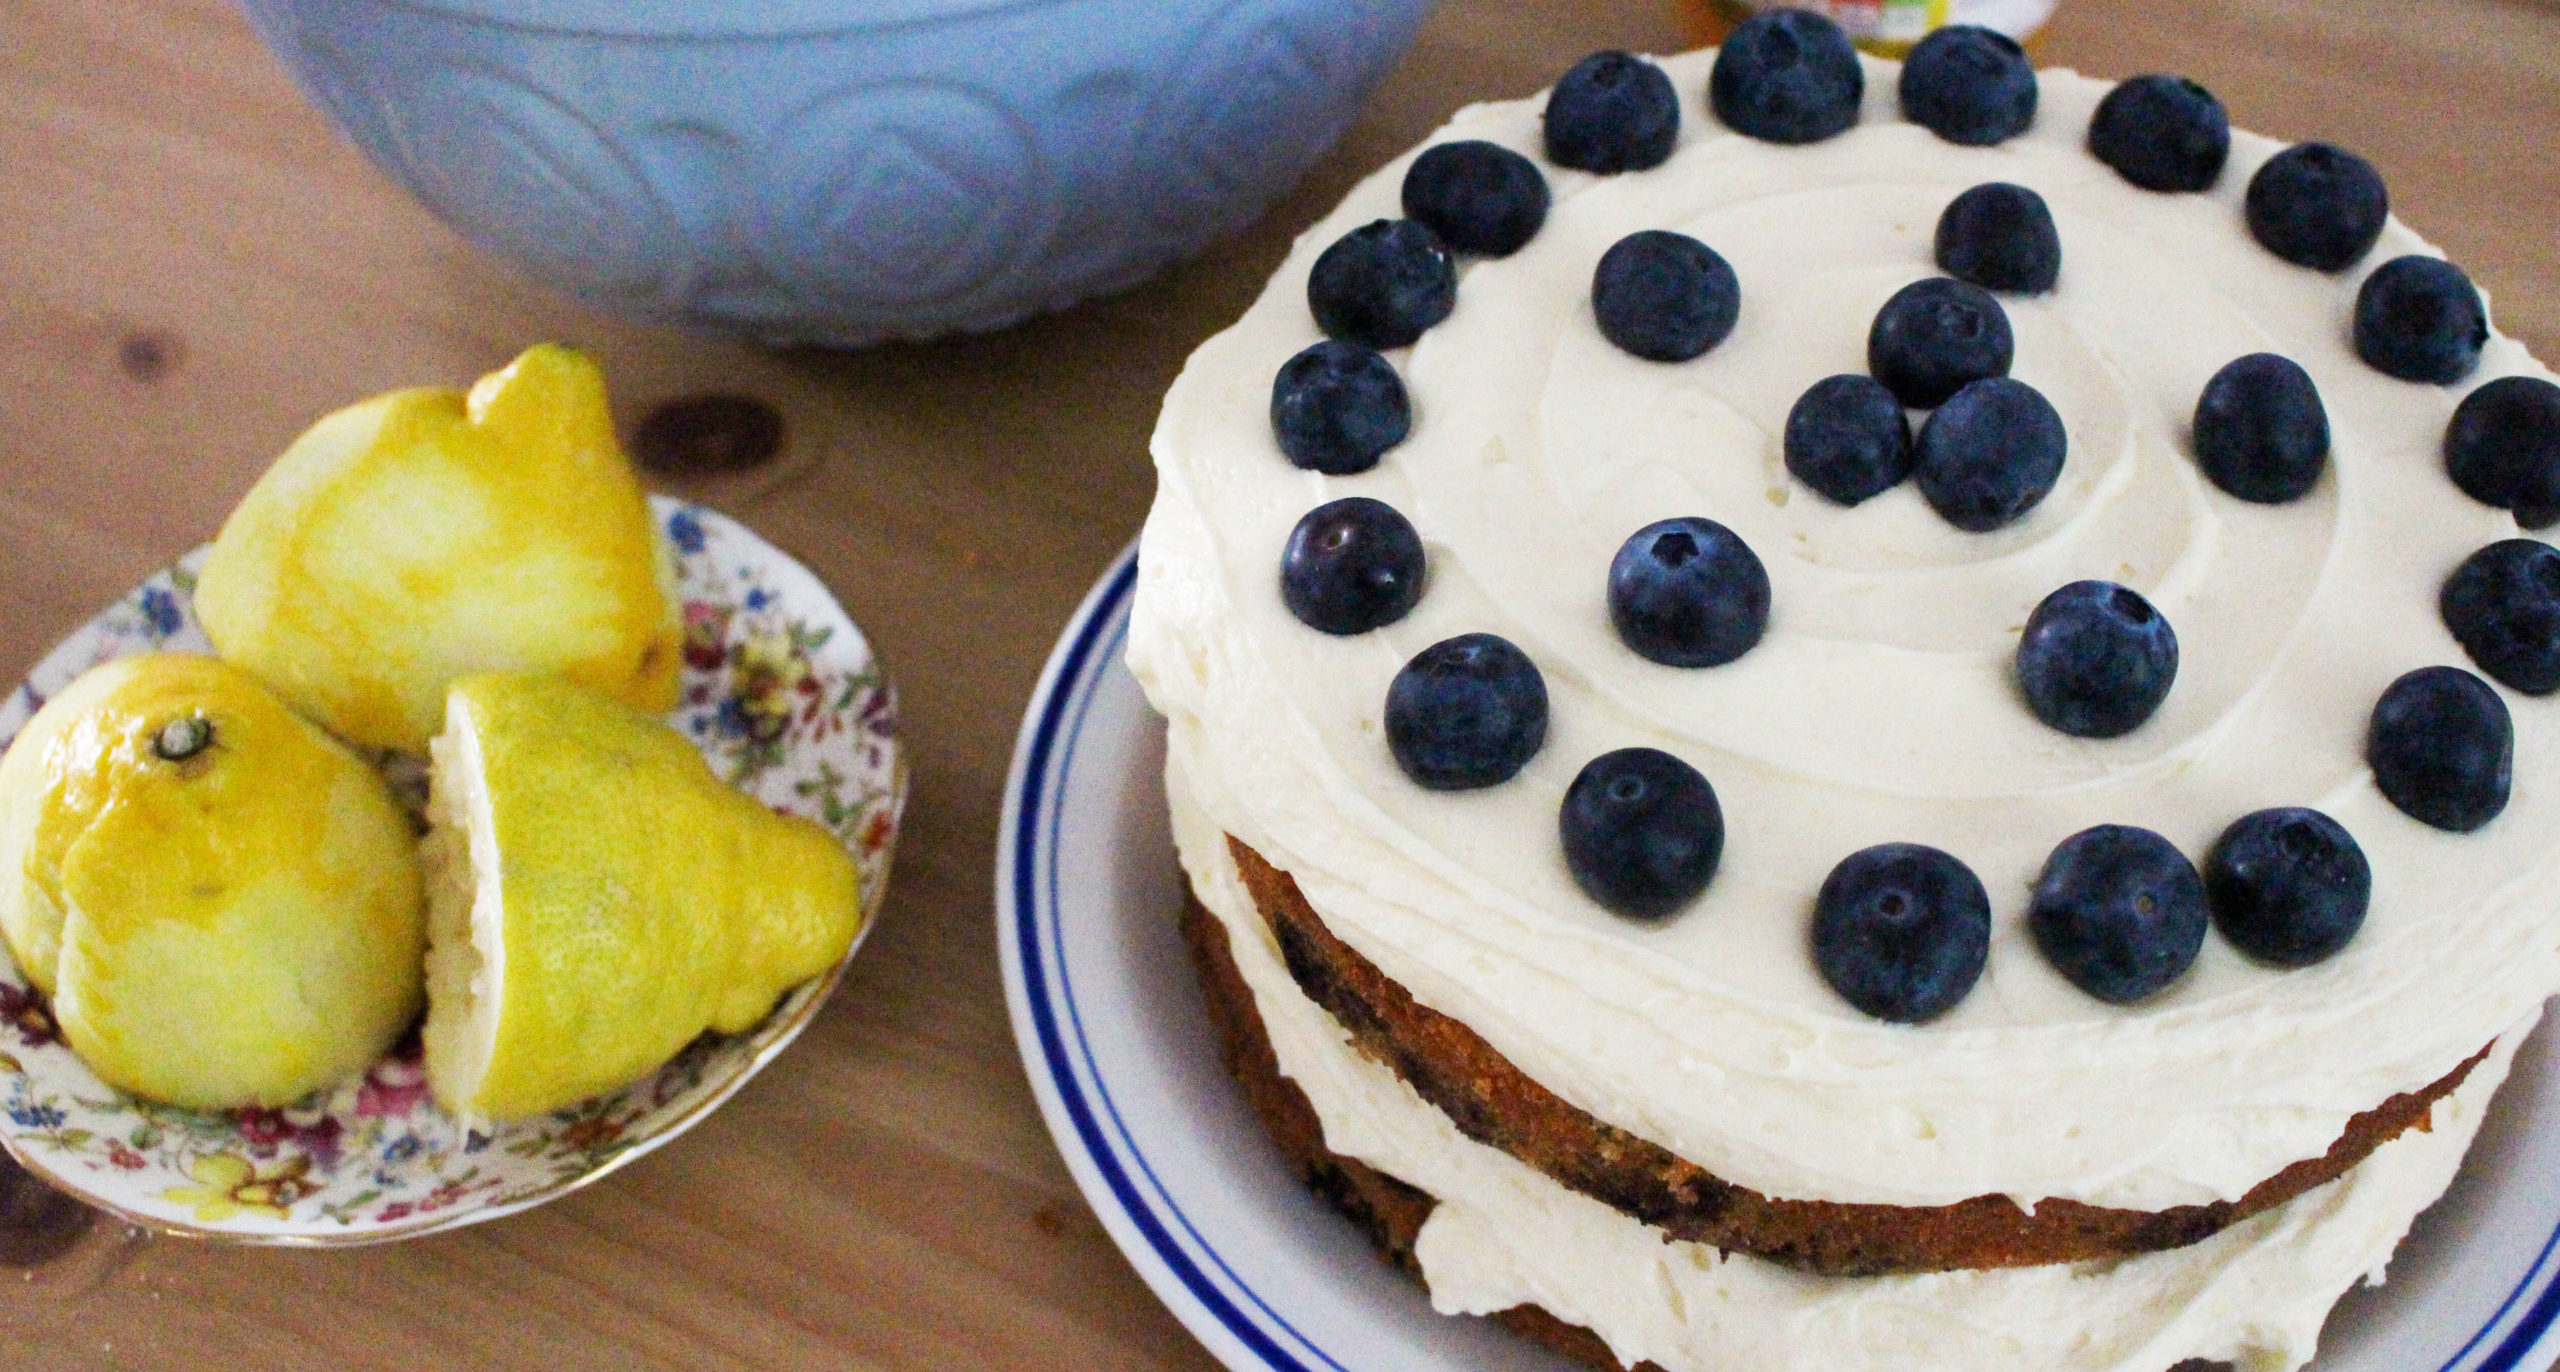 Sunday brunch ideas: Lemon and blueberry cake recipe